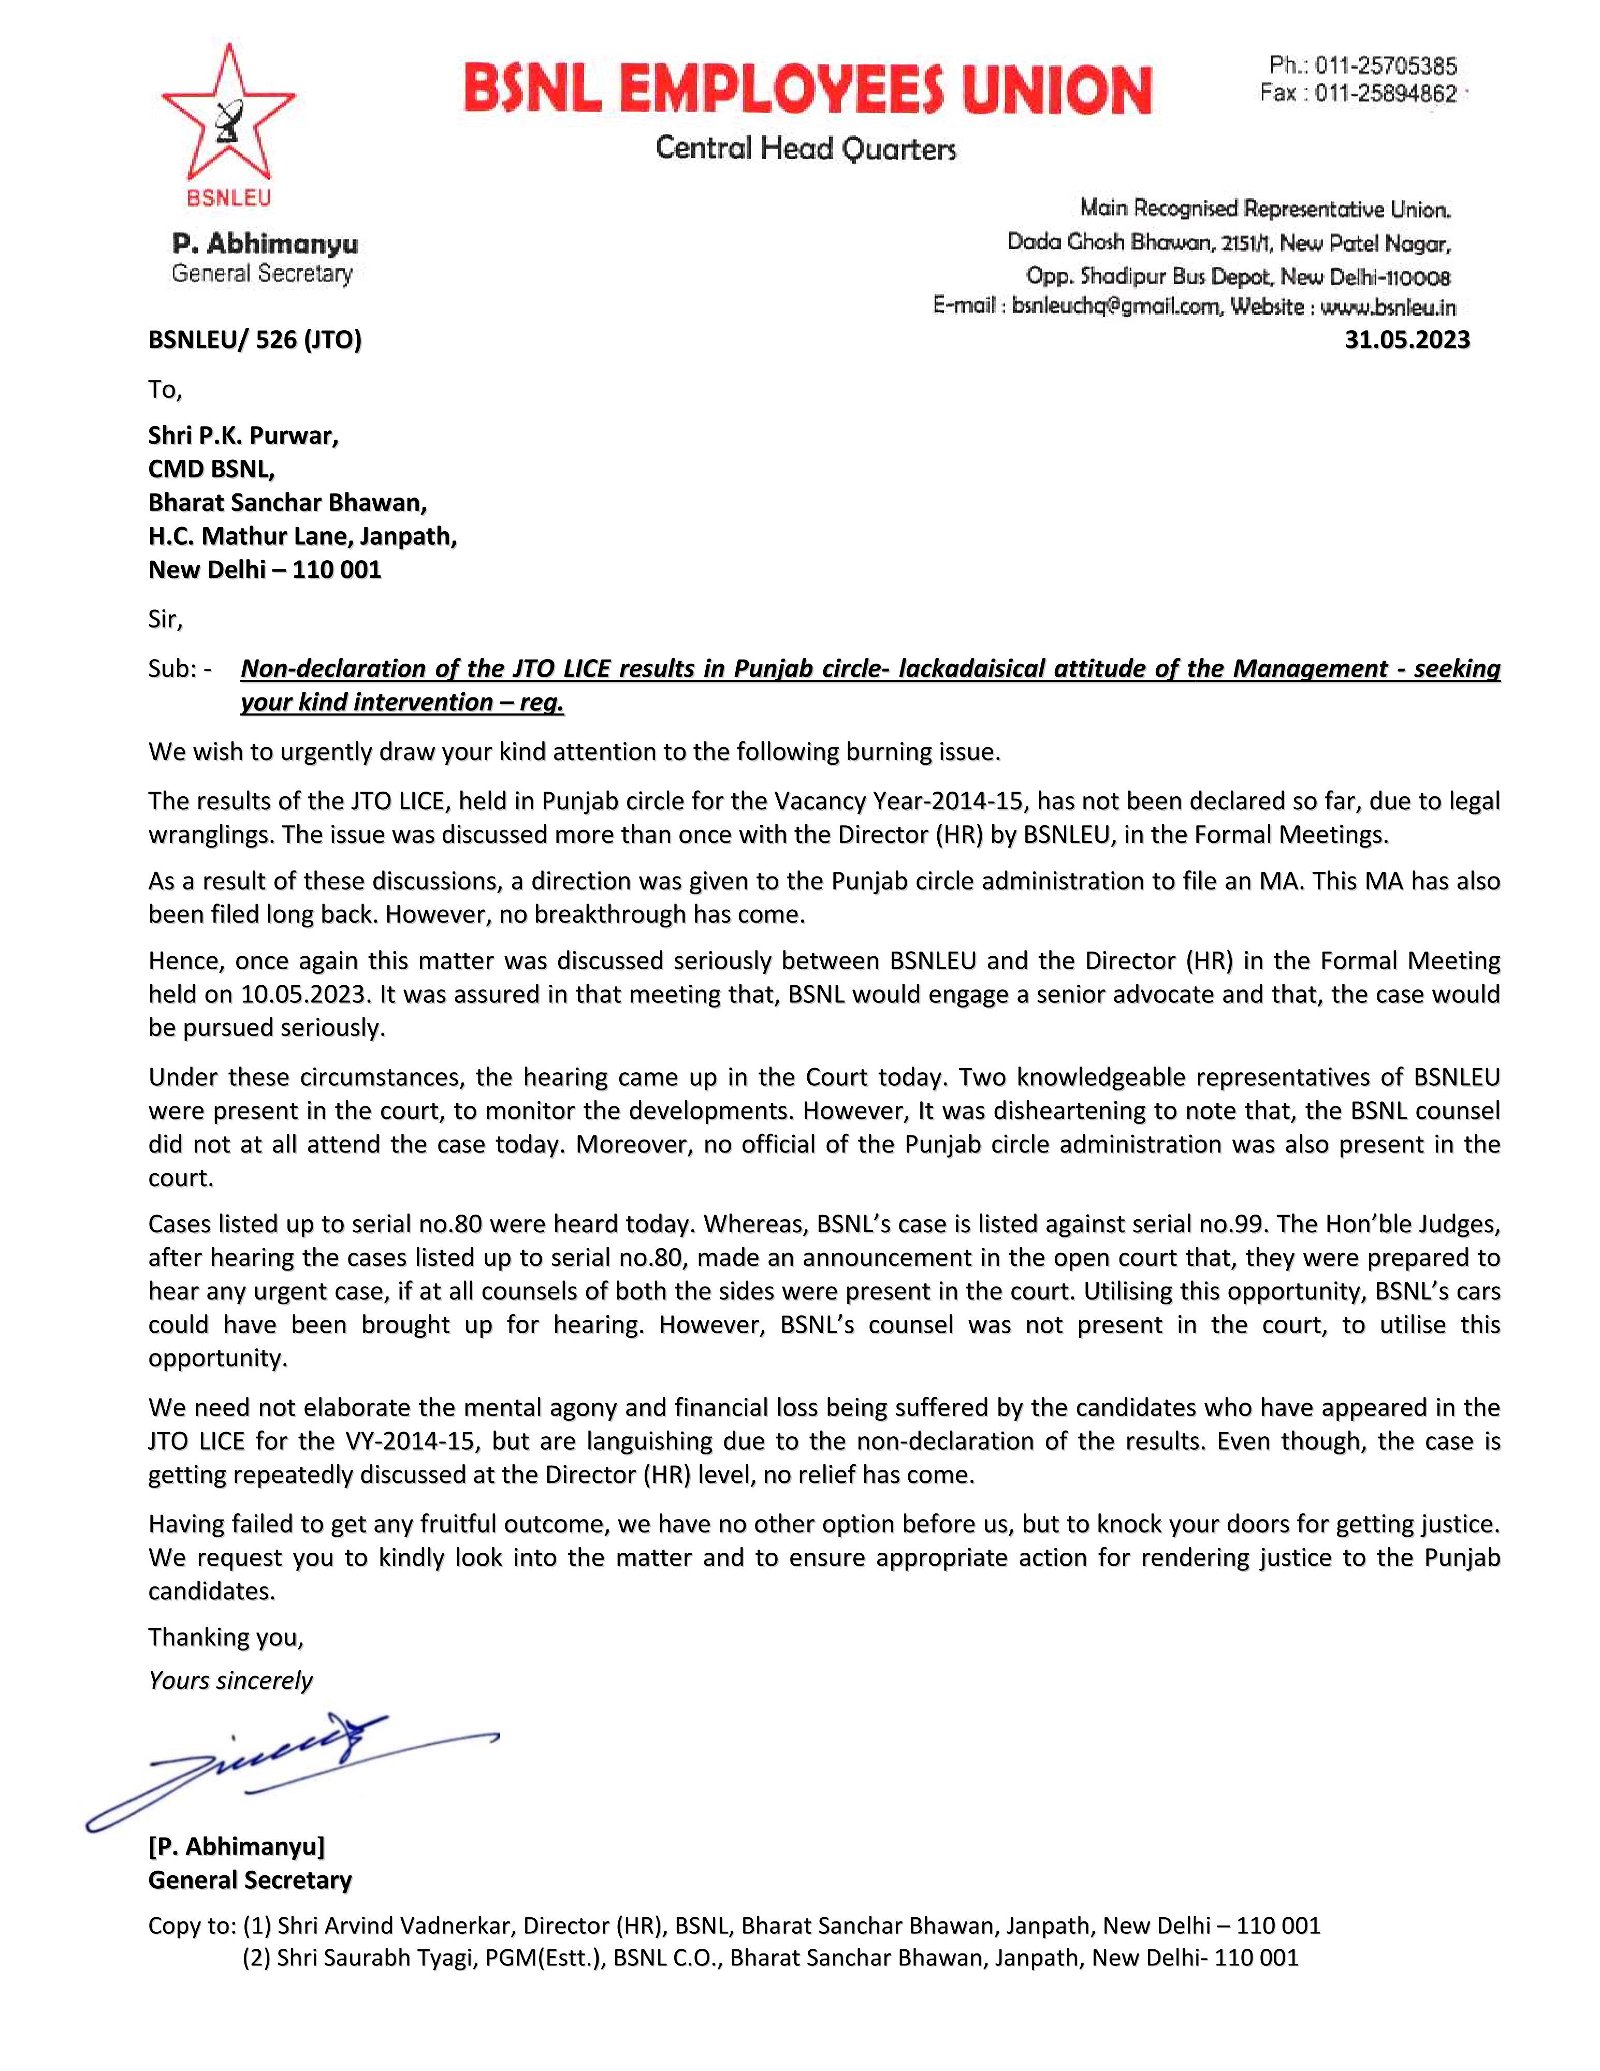 *पंजाब सर्कलमध्ये JTO LICE चे निकाल जाहीर न करणे- BSNLEU ने CMD BSNL ला पत्र लिहून त्यांच्या हस्तक्षेपाची मागणी केली.* Image 